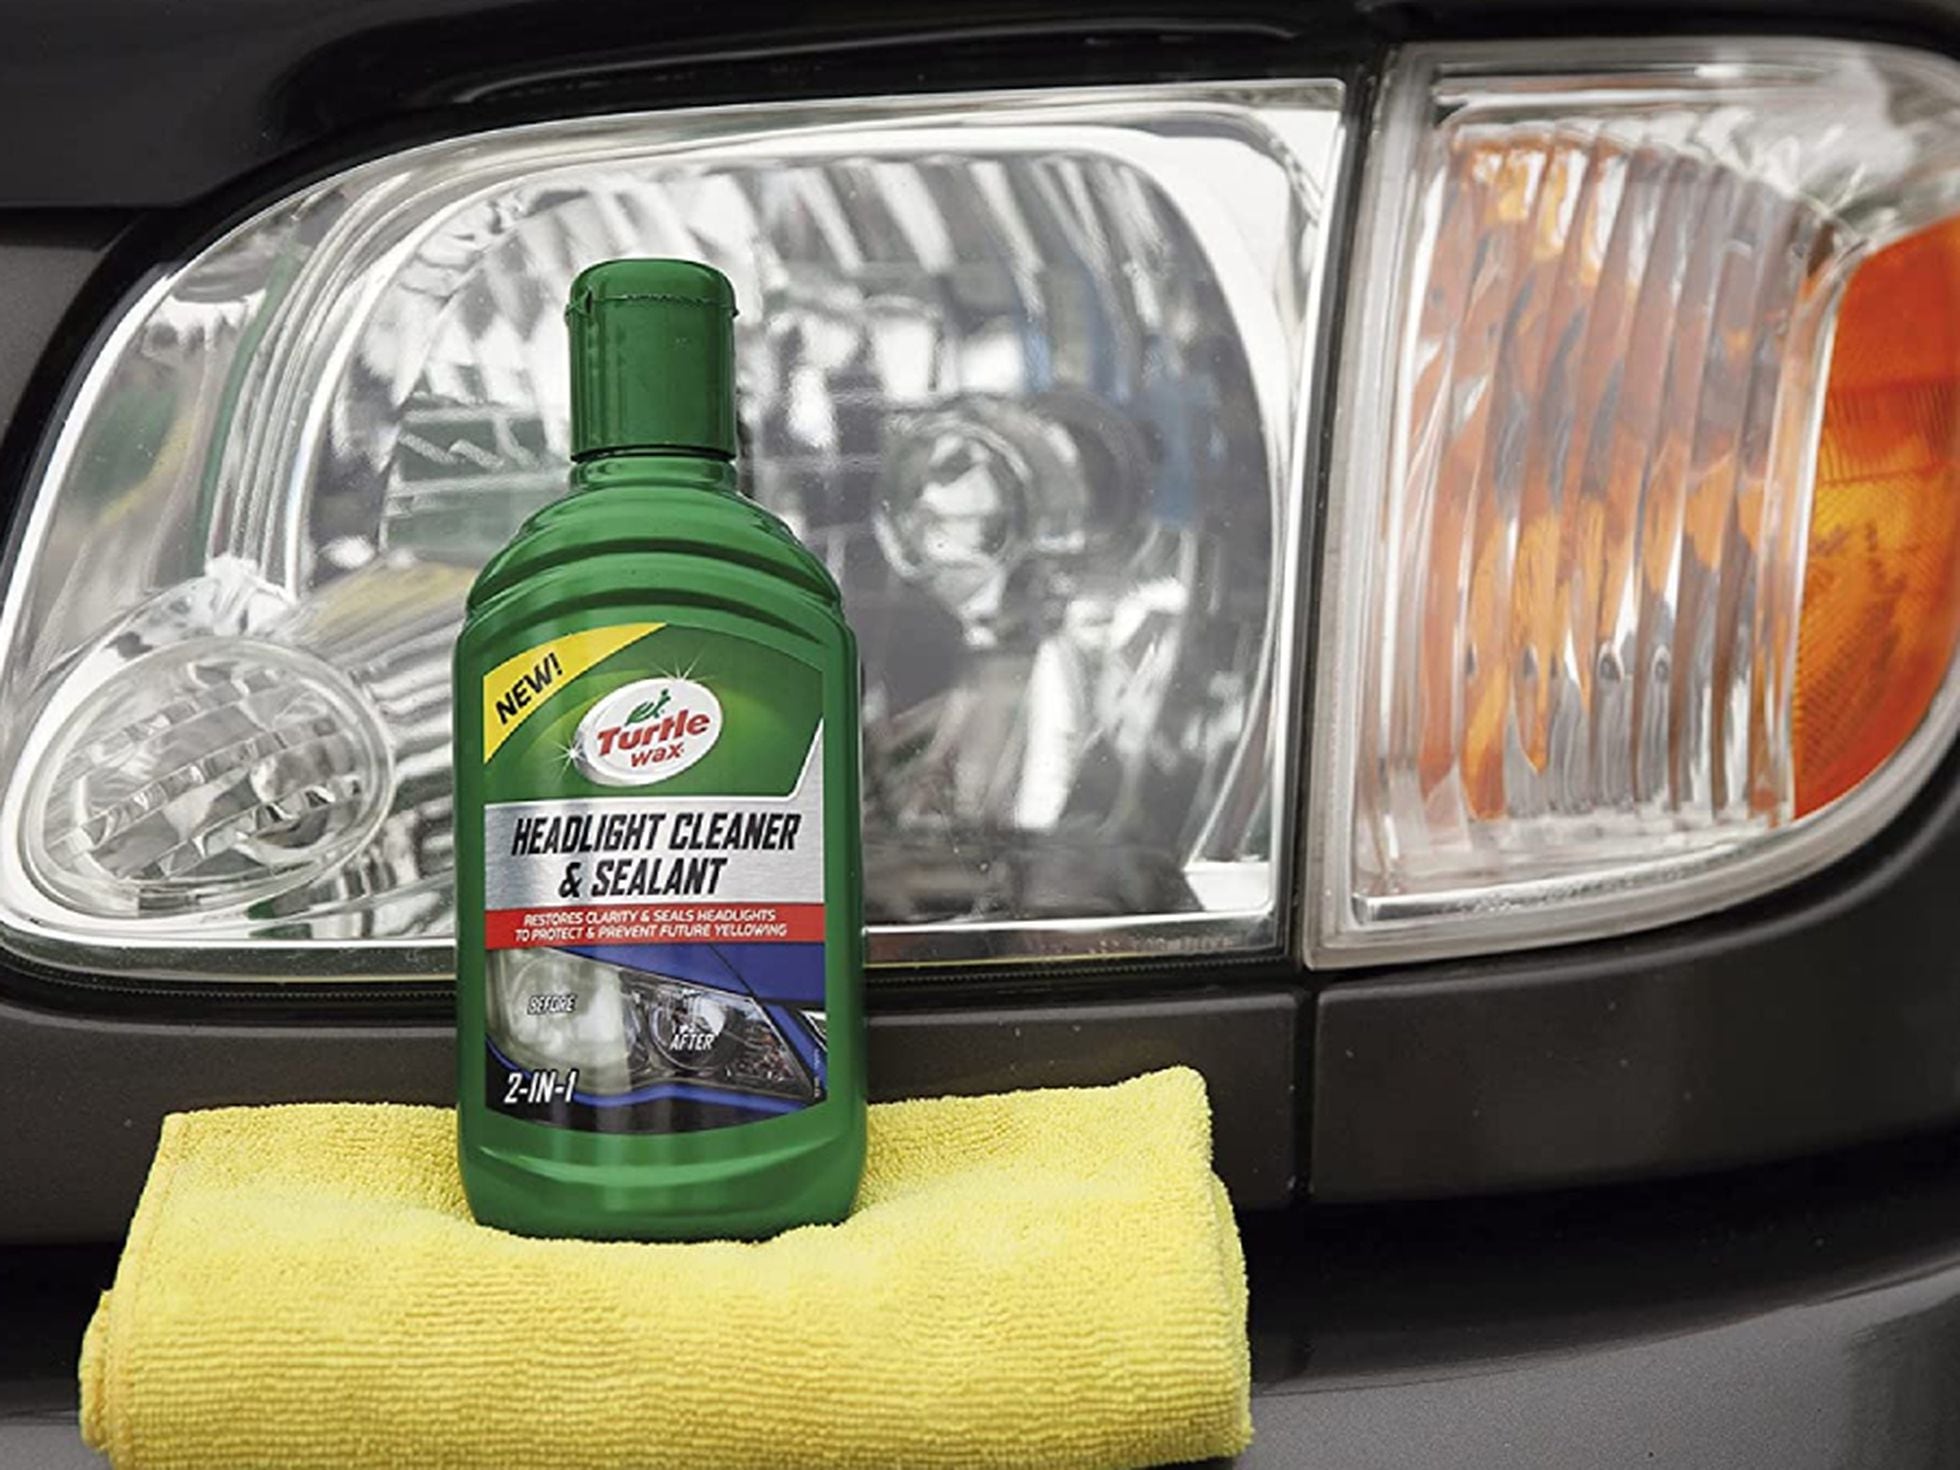 Este es el mejor truco para limpiar los faros de tu coche de forma rápida,  barata